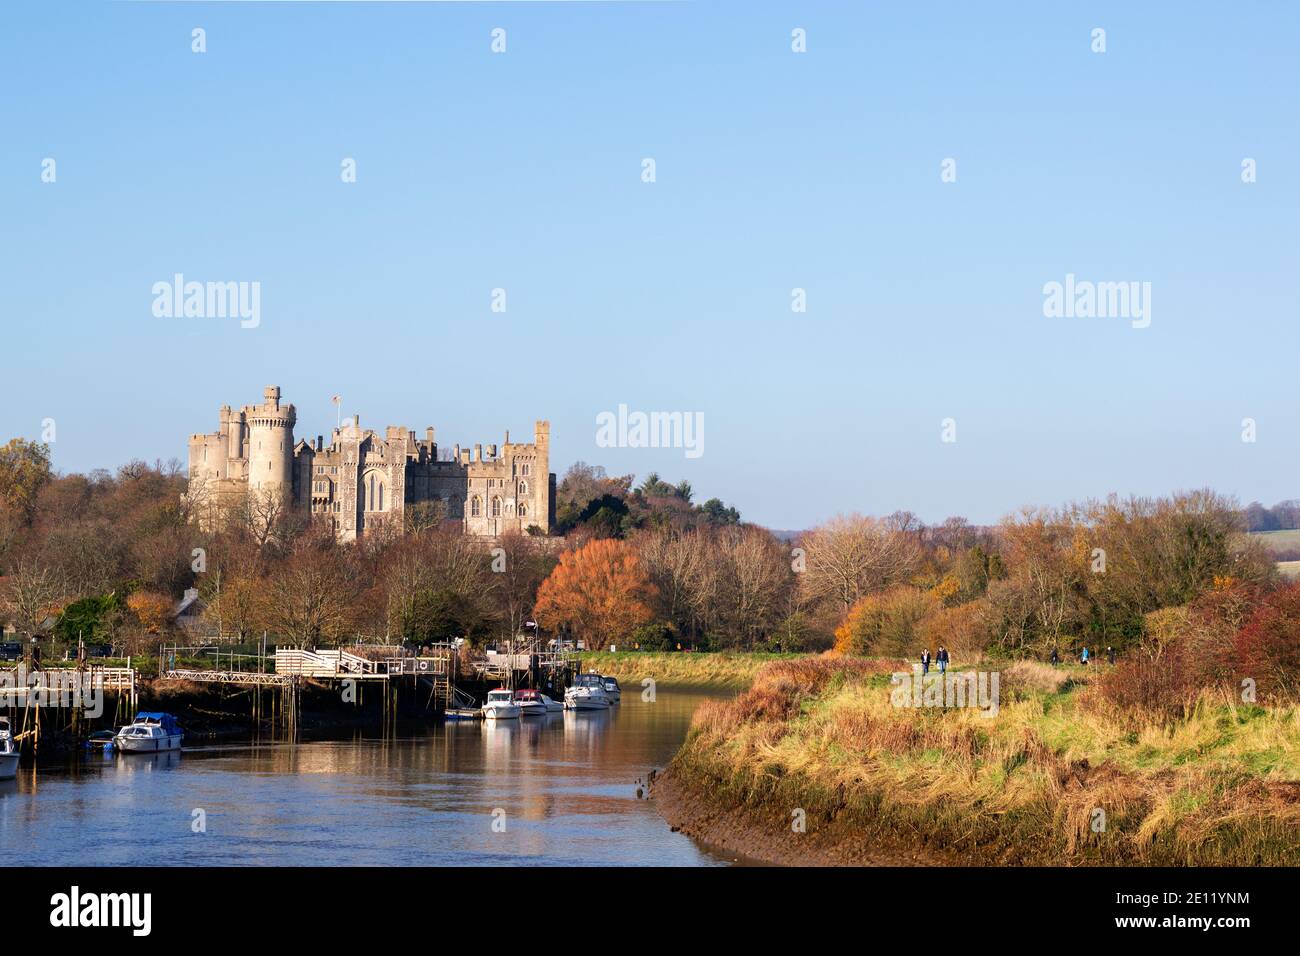 ARUNDEL, ENGLAND - 17. NOVEMBER 2018: Spaziergang entlang der Arun mit Blick auf Schloss Arundel an einem Herbstnachmittag Stockfoto